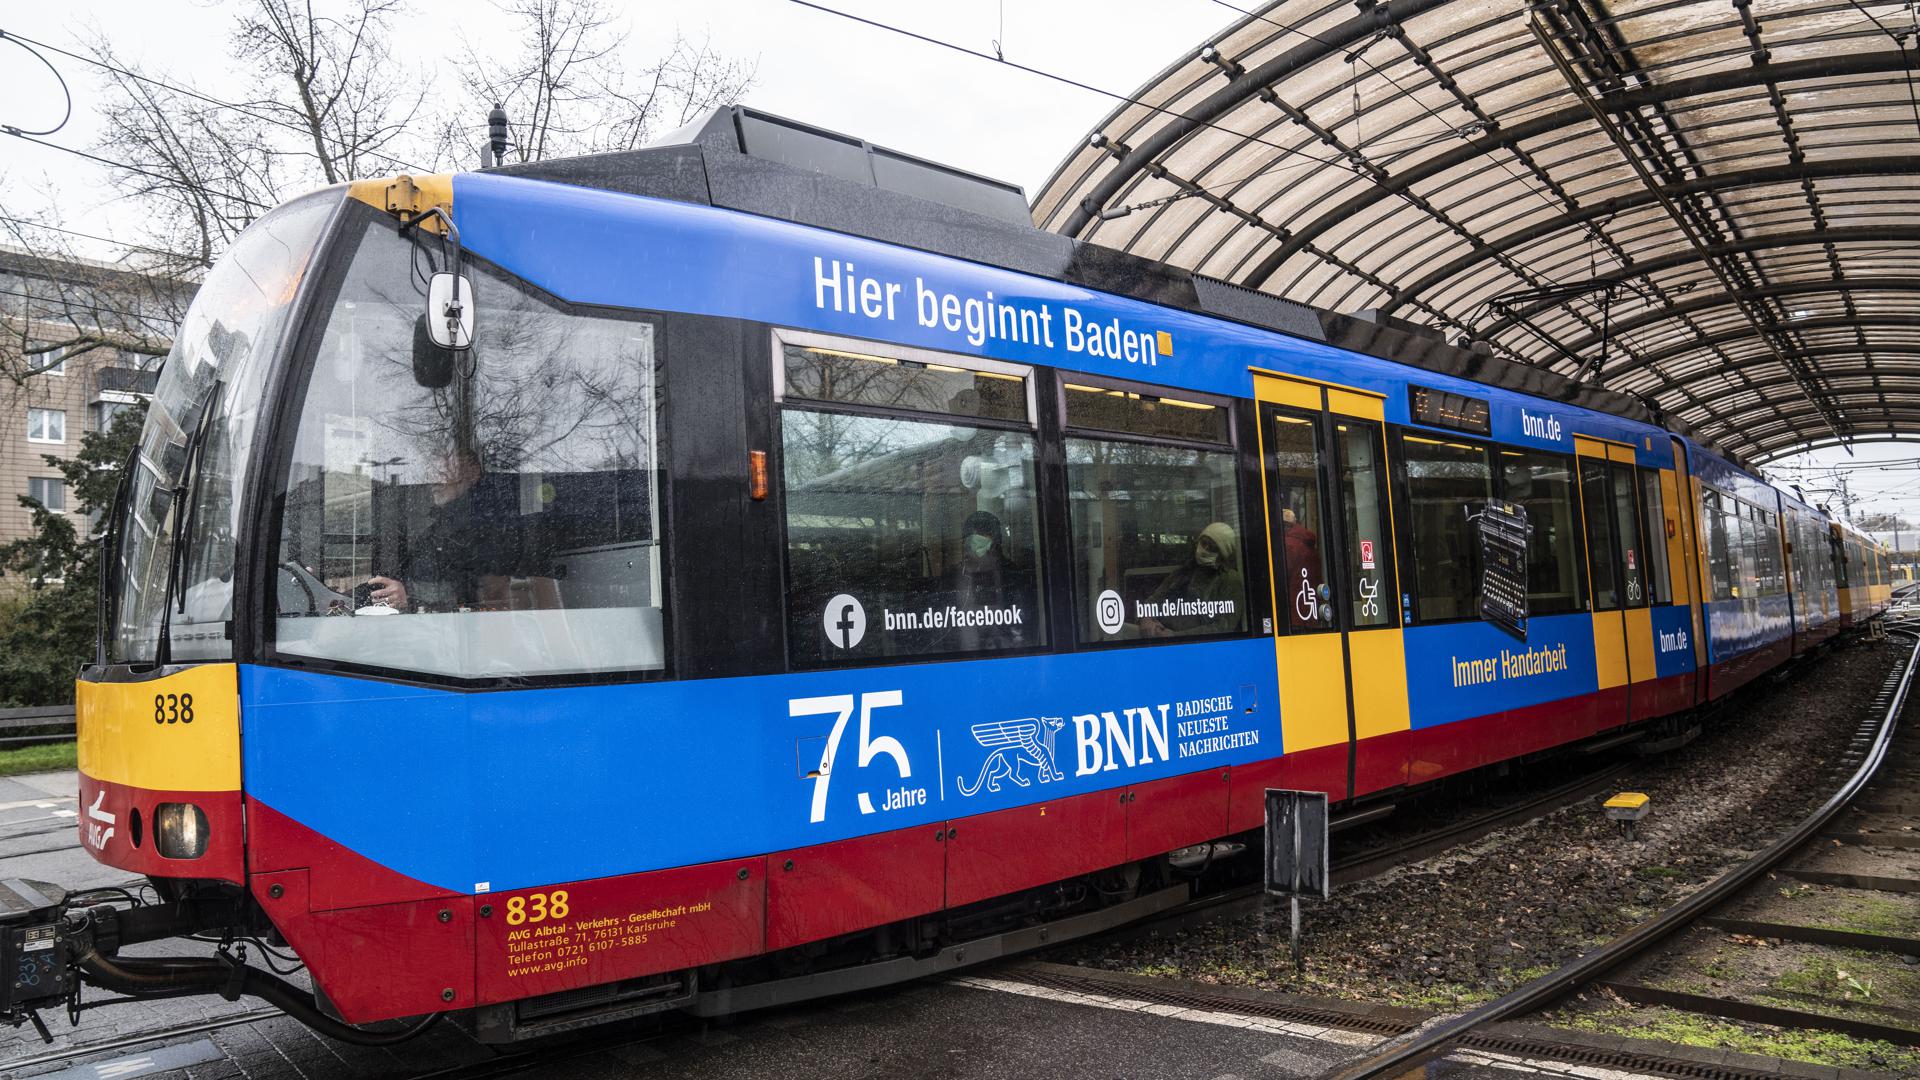 Die S-Bahn der Linie S7 des Karlsruher Verkehrsverbundes (KVV) mit dem BNN-Jubiläumsmotiv verlässt den Albtal-Bahnhof in Karlsruhe. 